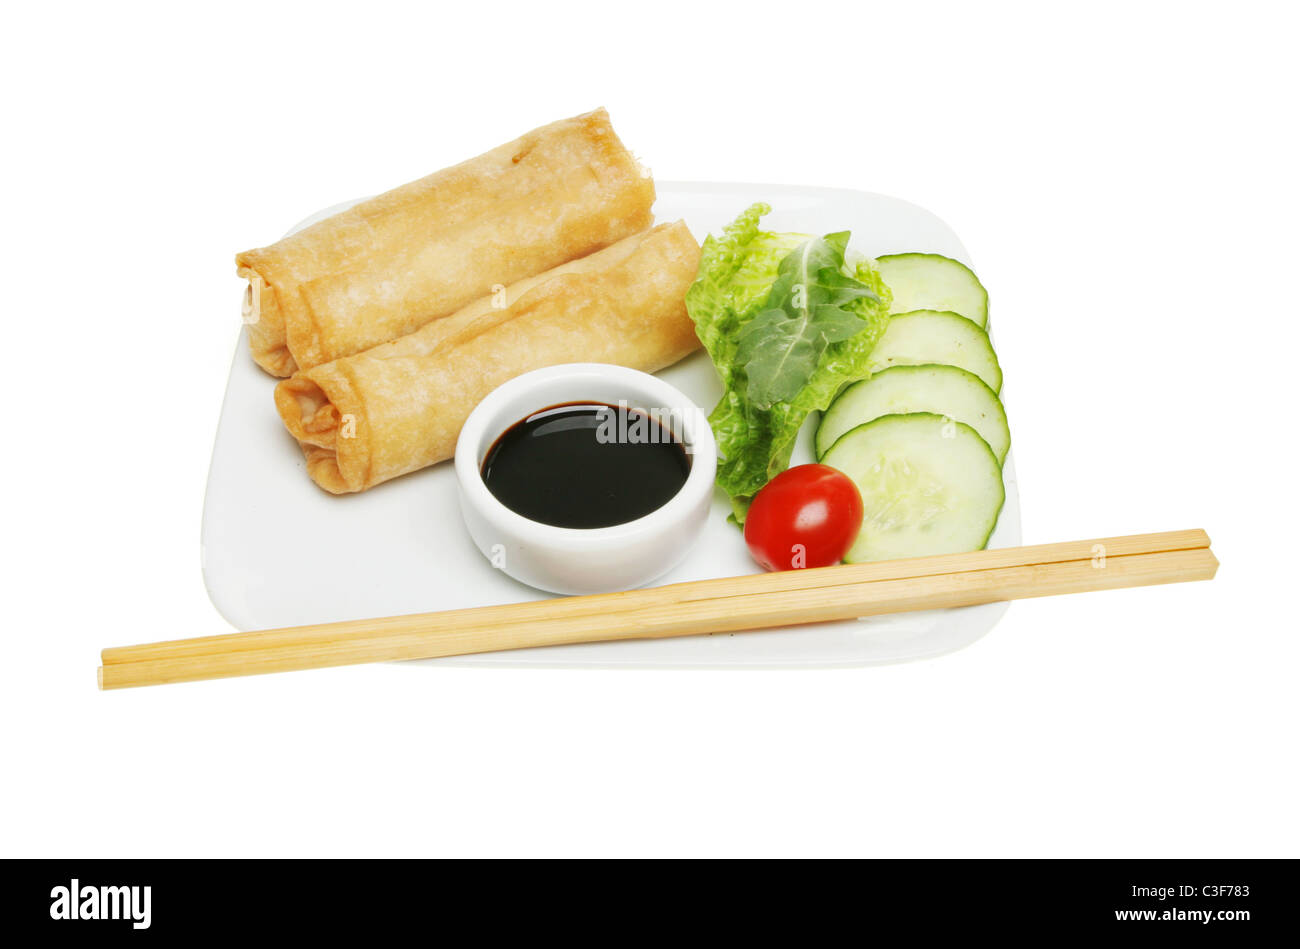 Chinesische Pfannkuchen rollt auf einem Teller mit Soja-Sauce Tauchen; und ein Salat garnieren; Stäbchen auf die Kante der Platte Stockfoto